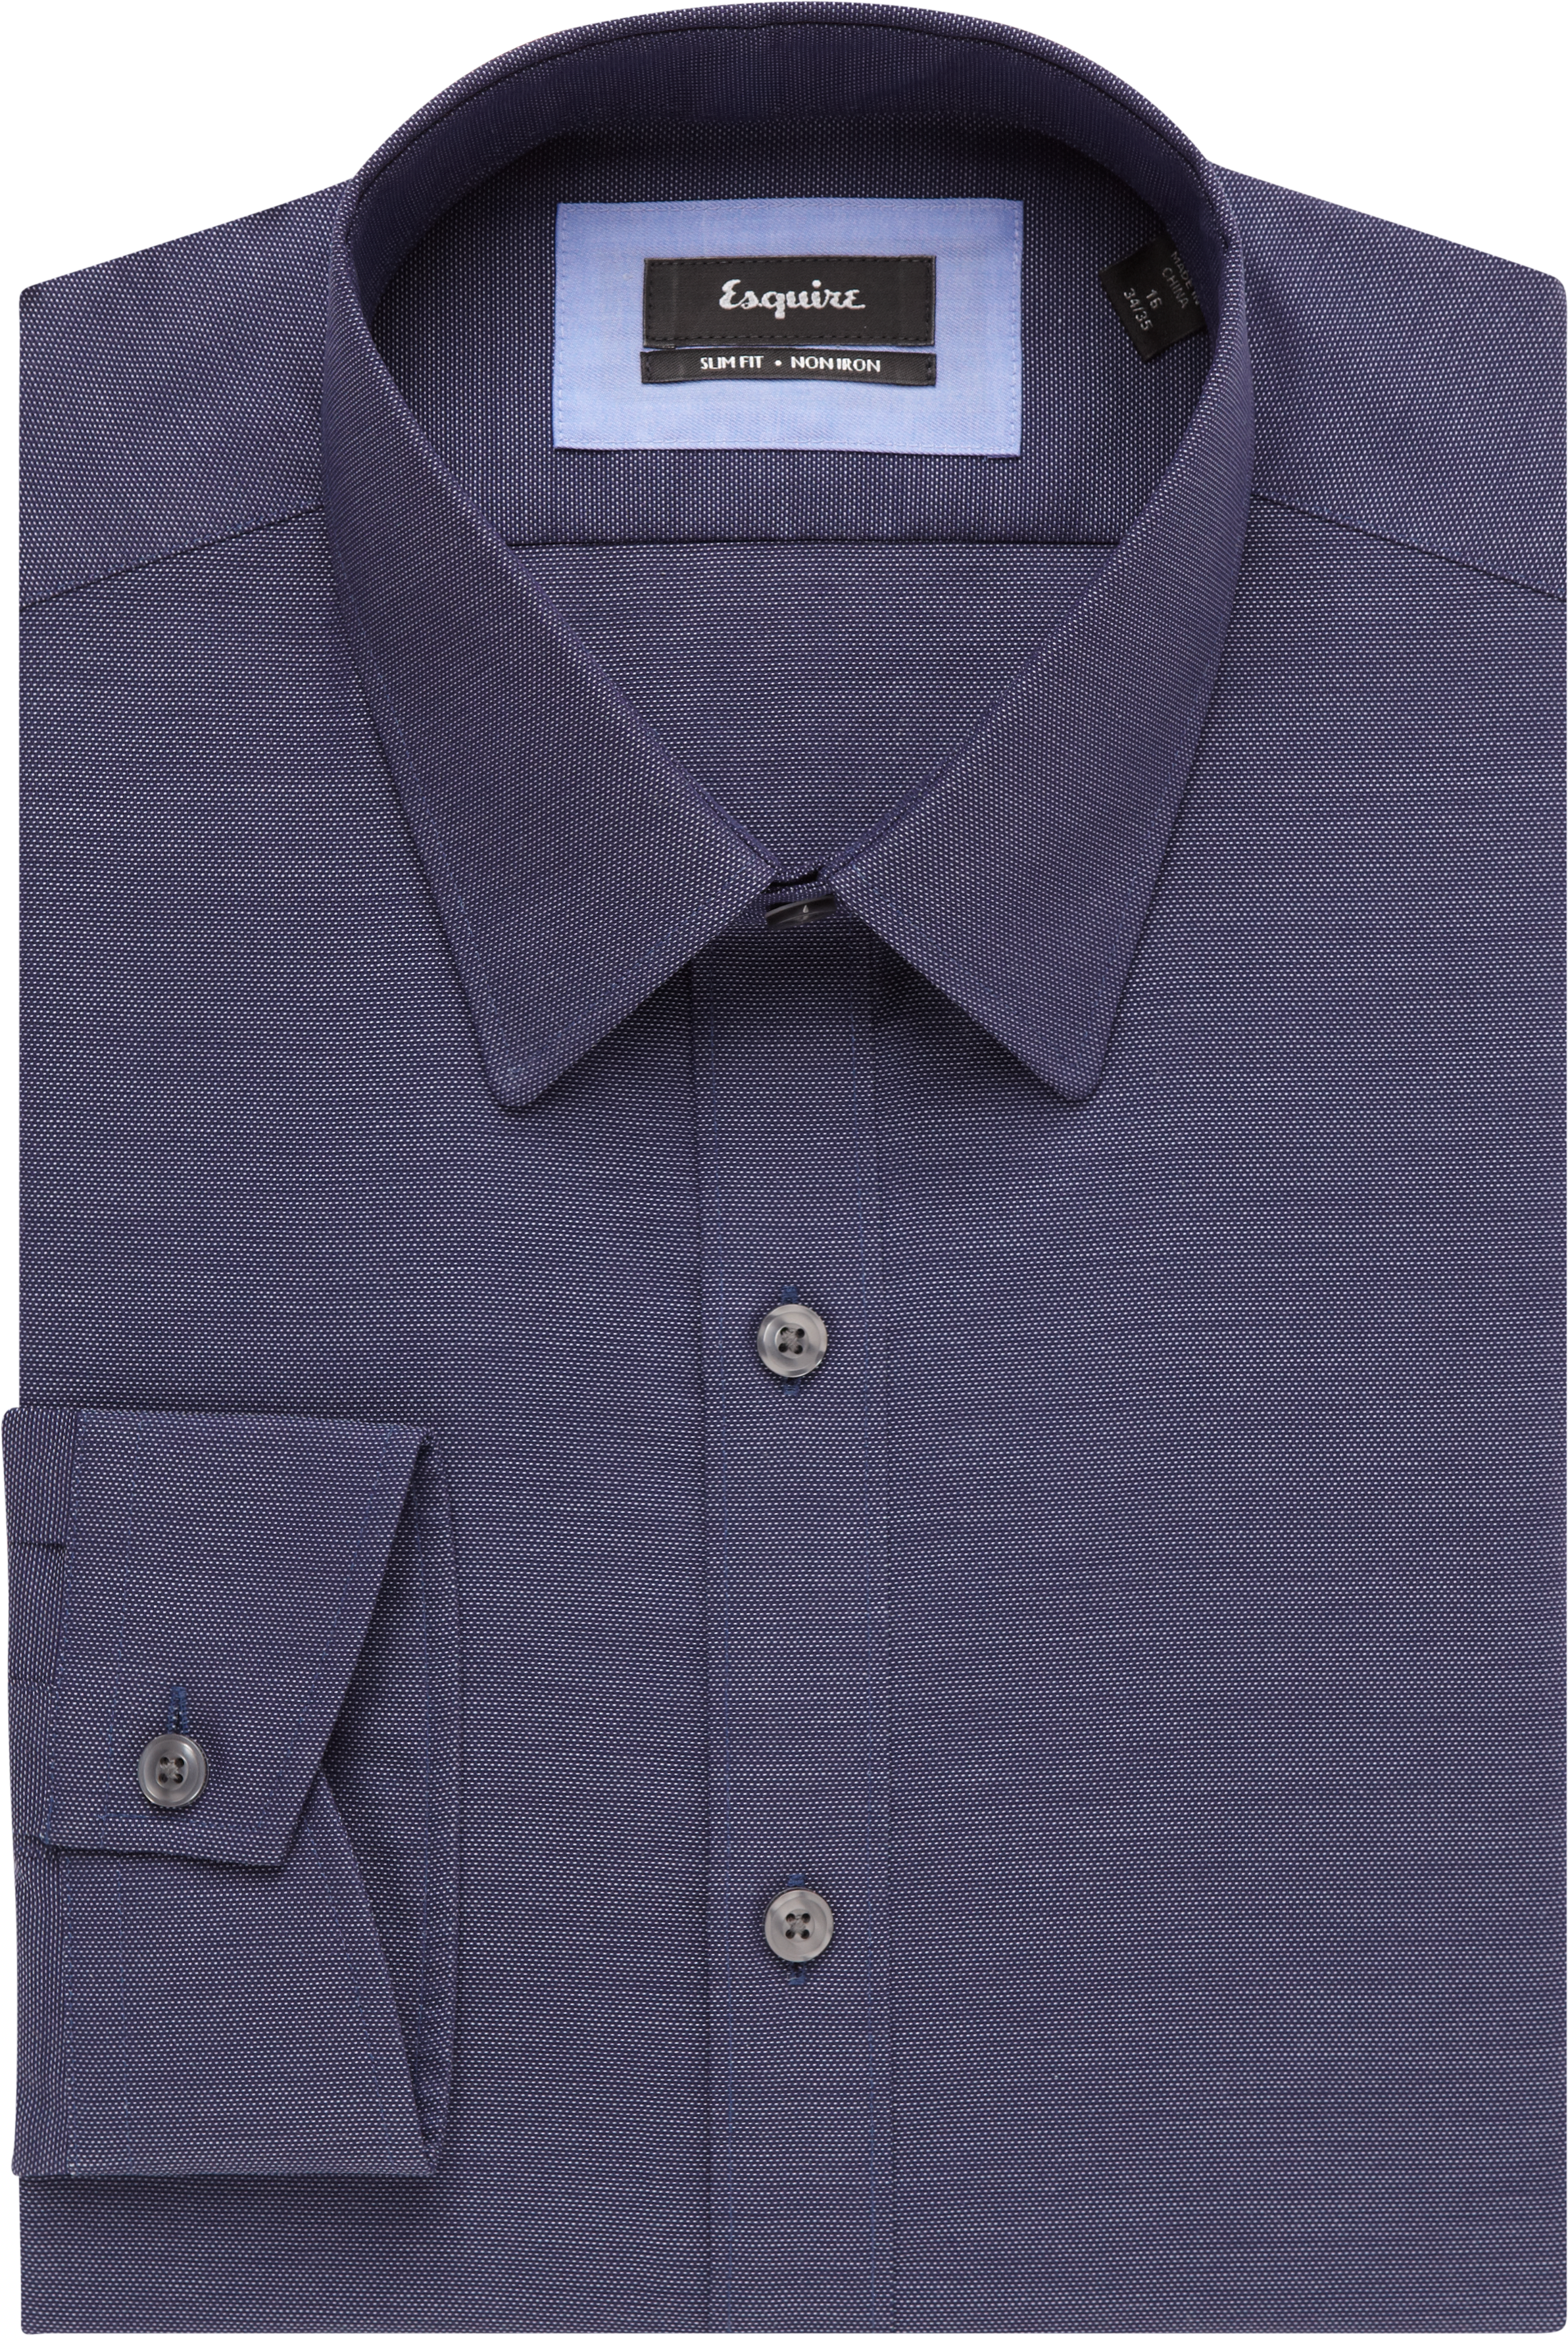 Esquire Indigo Blue Slim Fit Dress Shirt - Men's Shirts | Men's Wearhouse